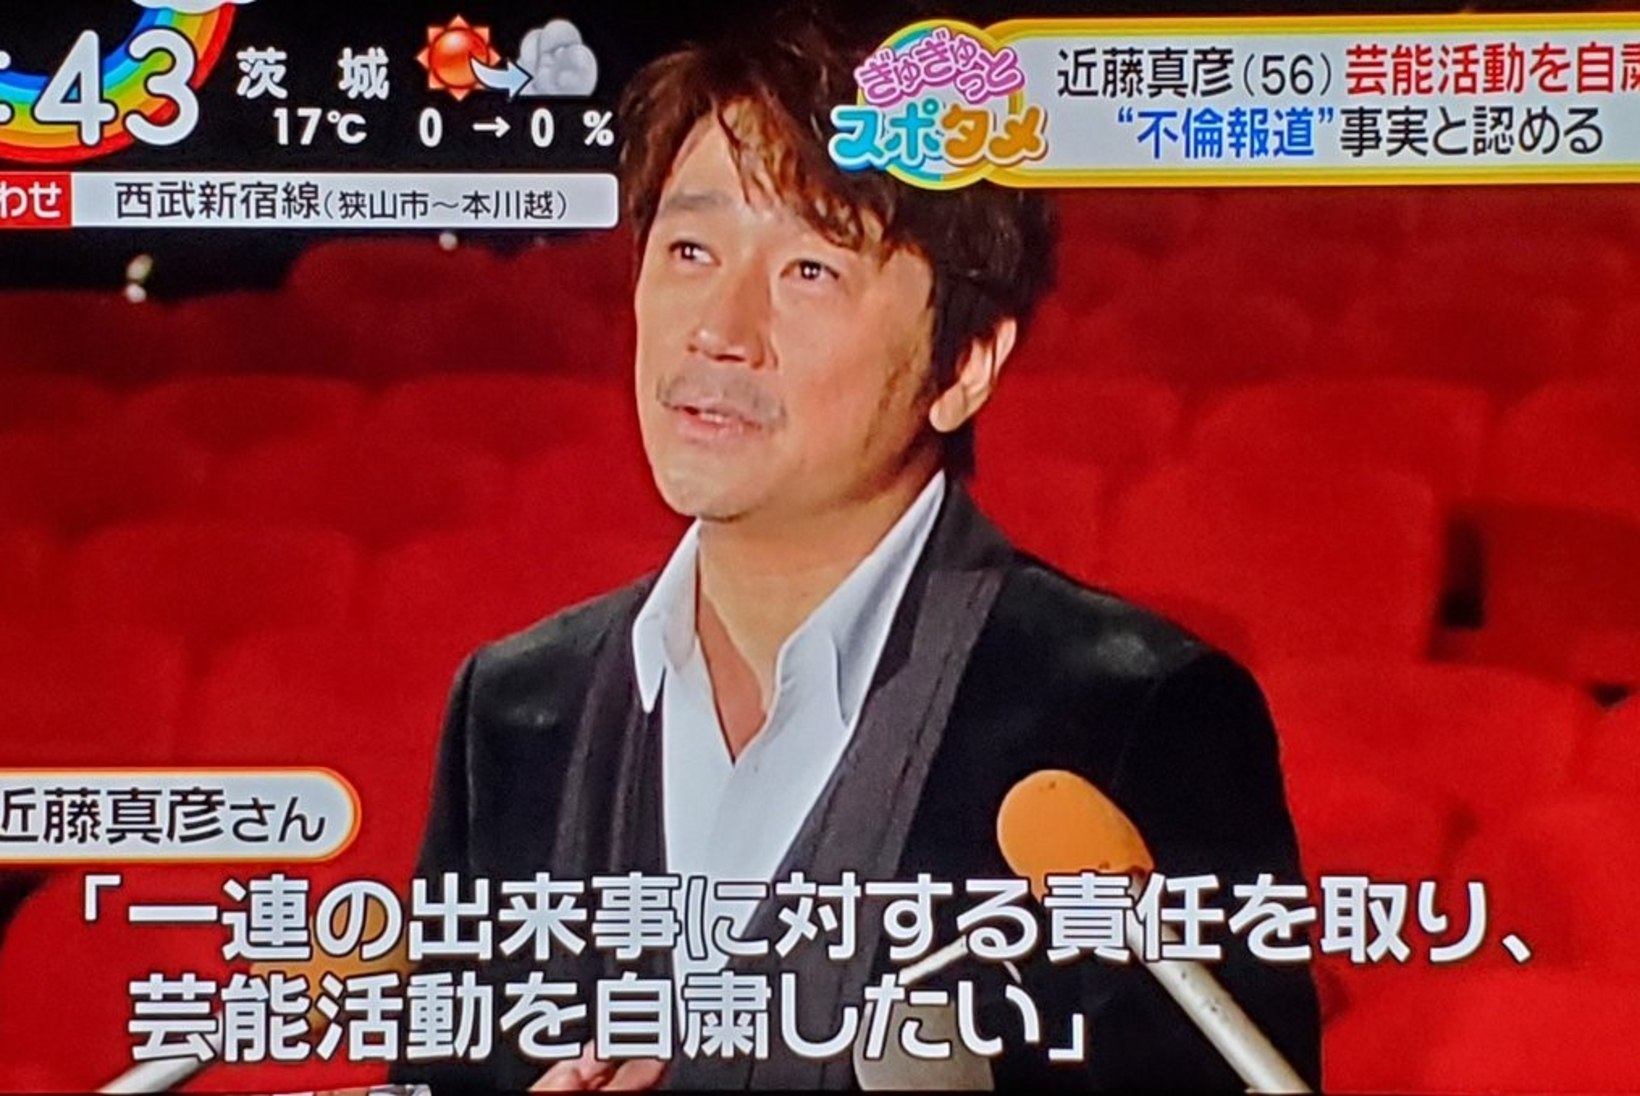 Jaapani poptähte karistati abielurikkumise eest esinemiskeeluga